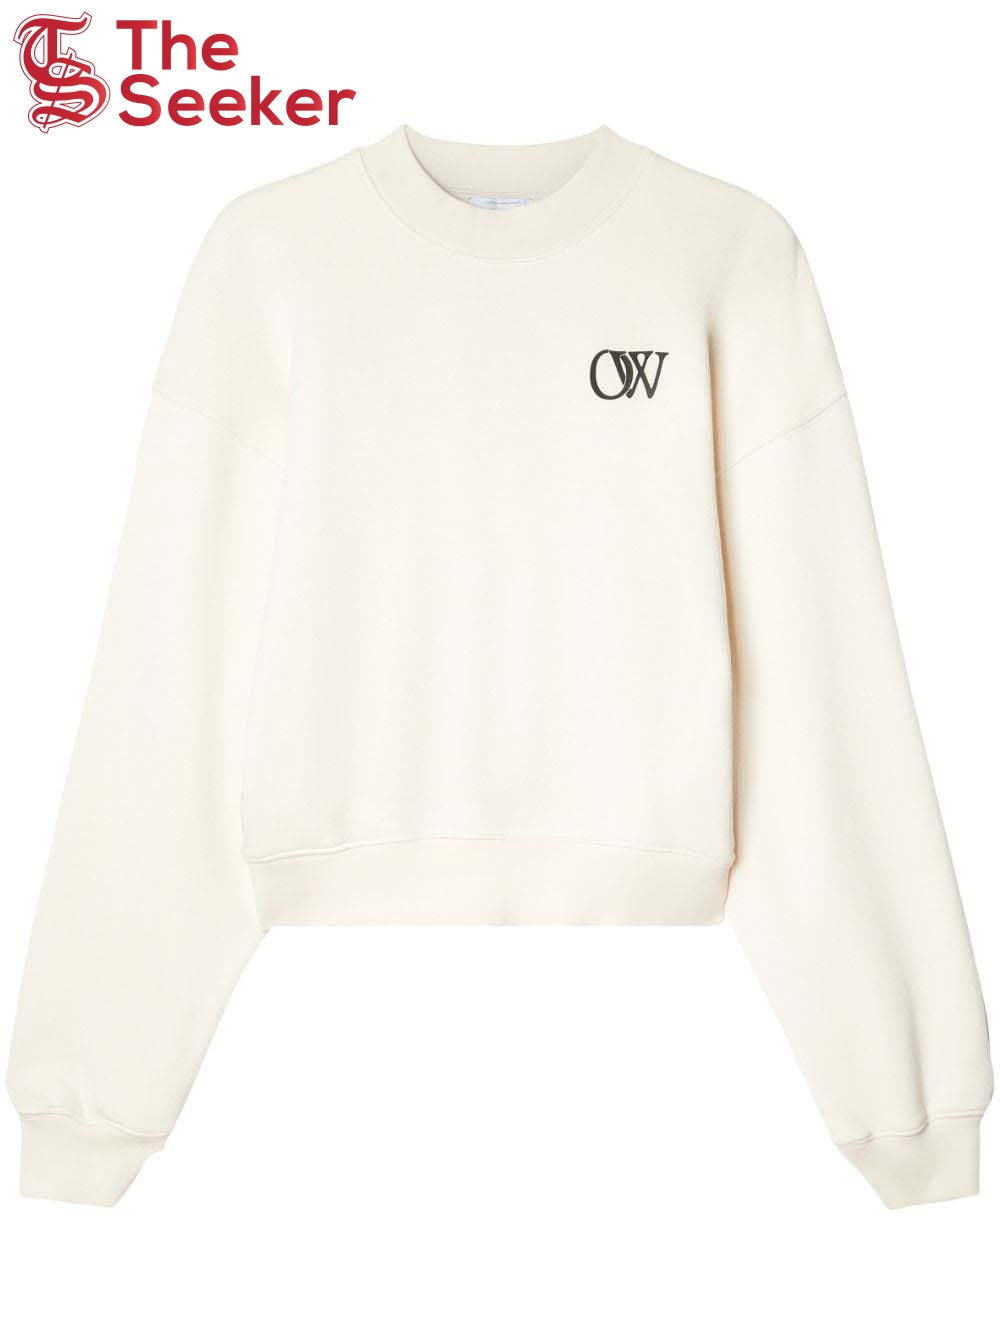 OFF-WHITE OW-Print Cotton Sweatshirt Cream White